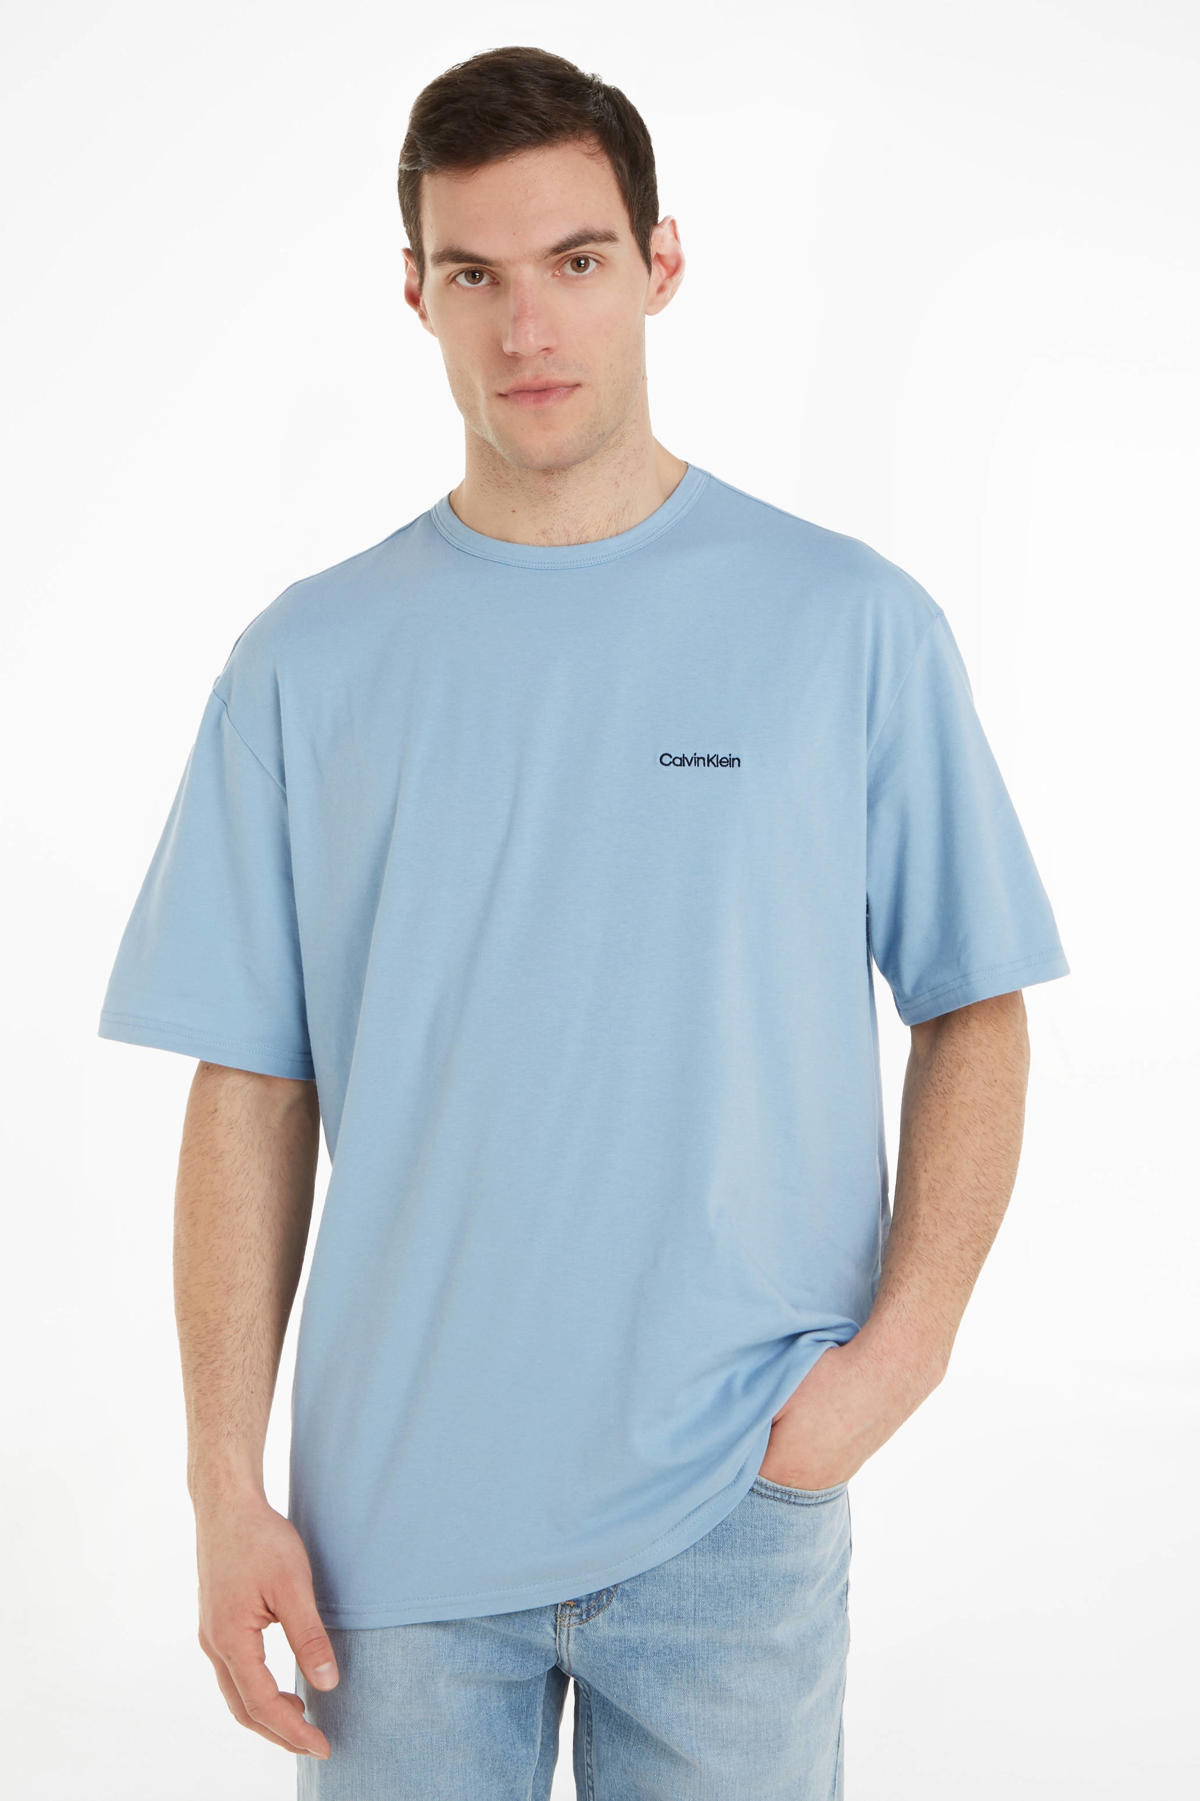 Minachting Identificeren Weiland Calvin Klein T-shirt lichtblauw | wehkamp